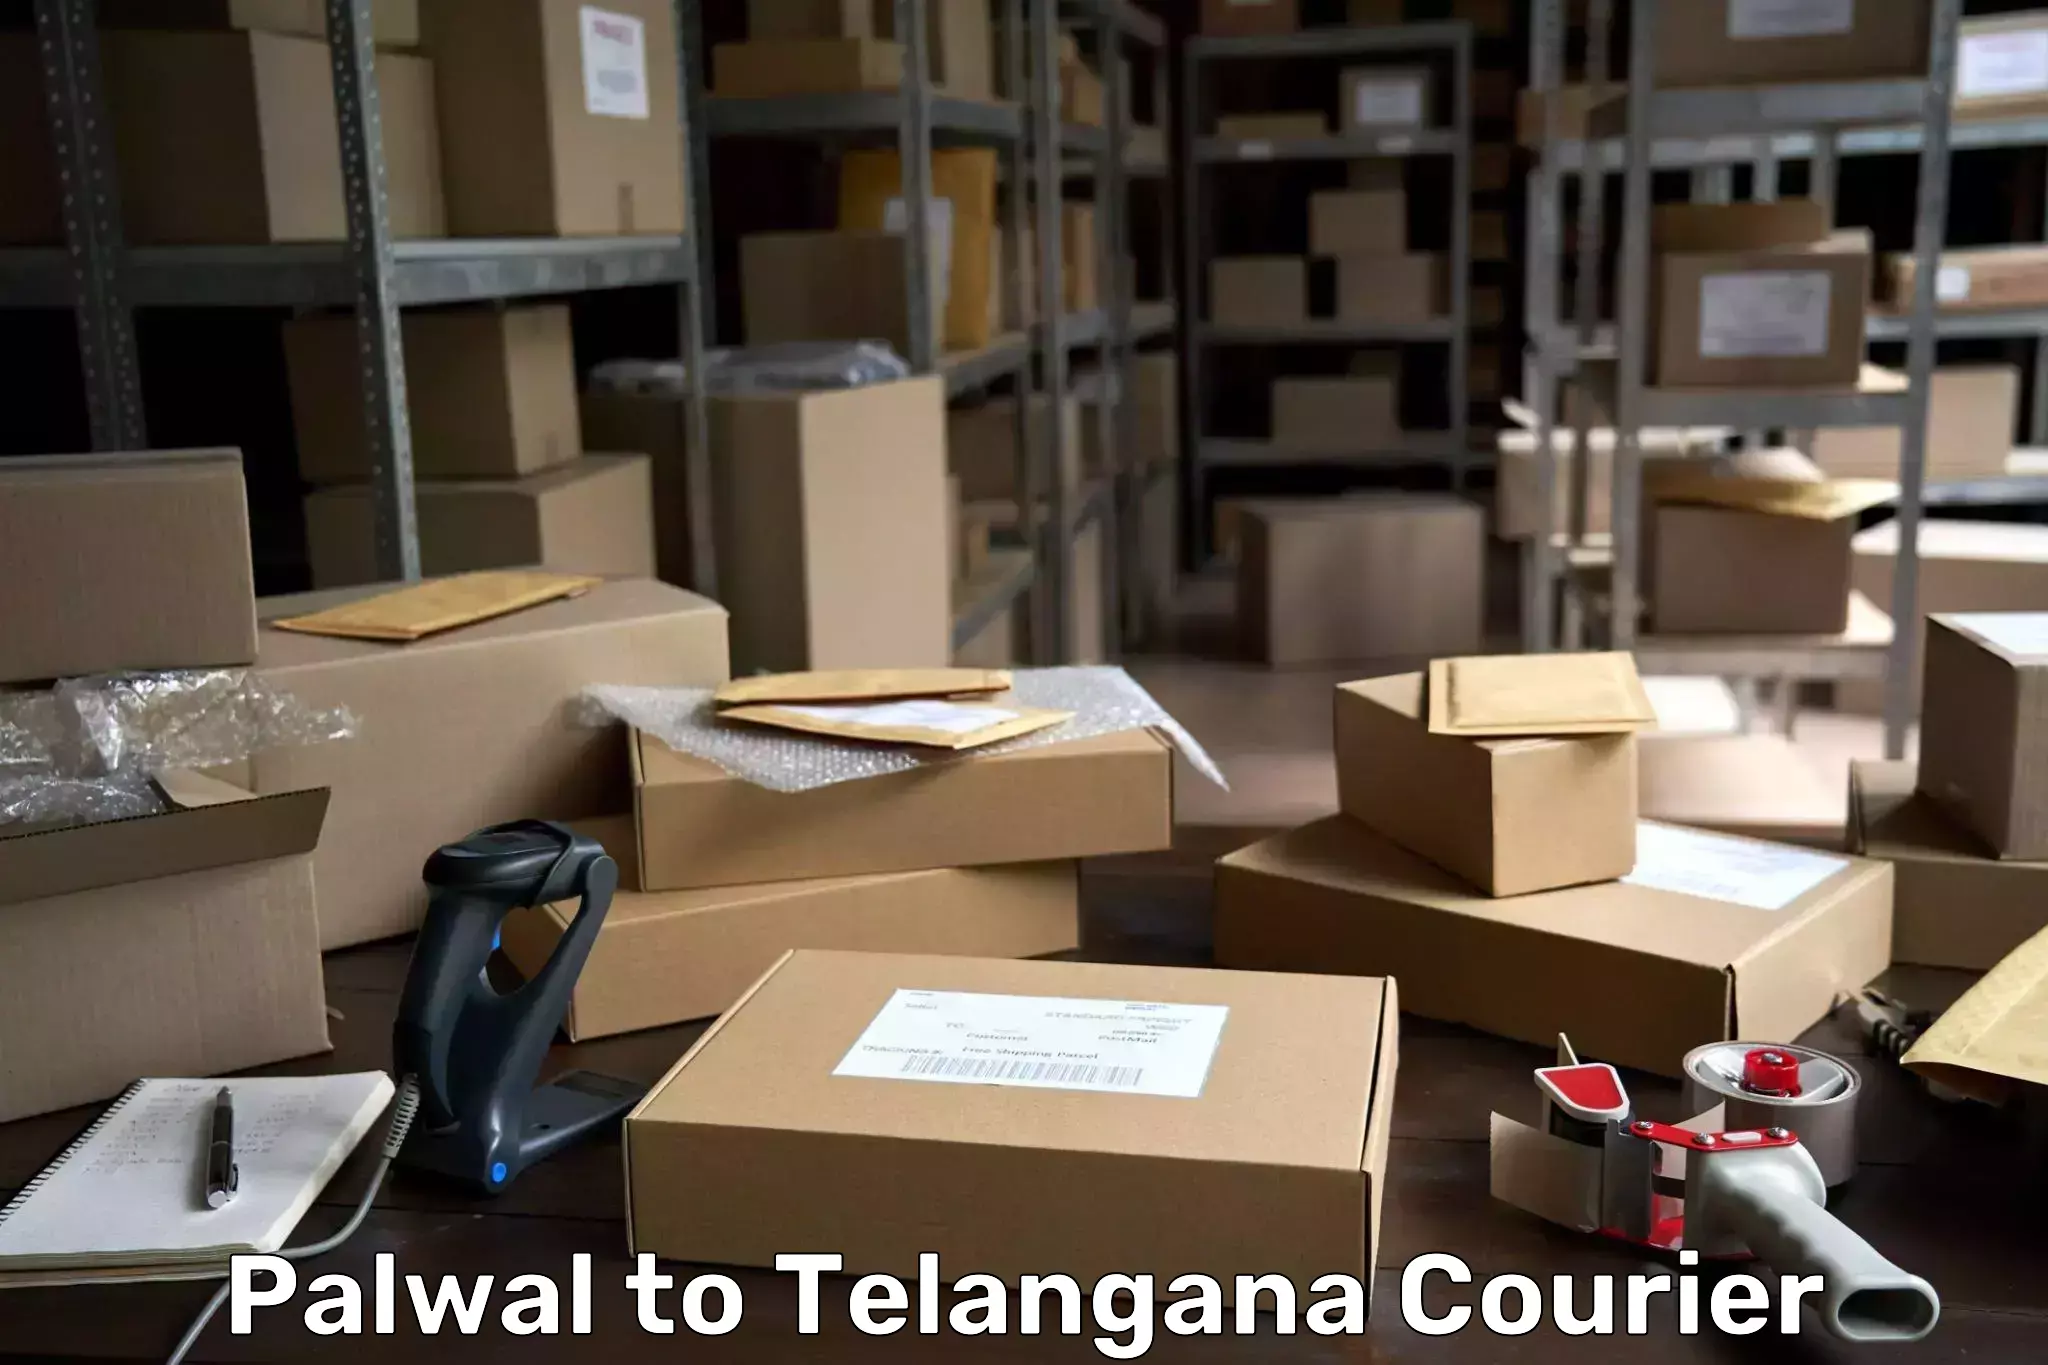 Customer-centric shipping Palwal to Hanamkonda